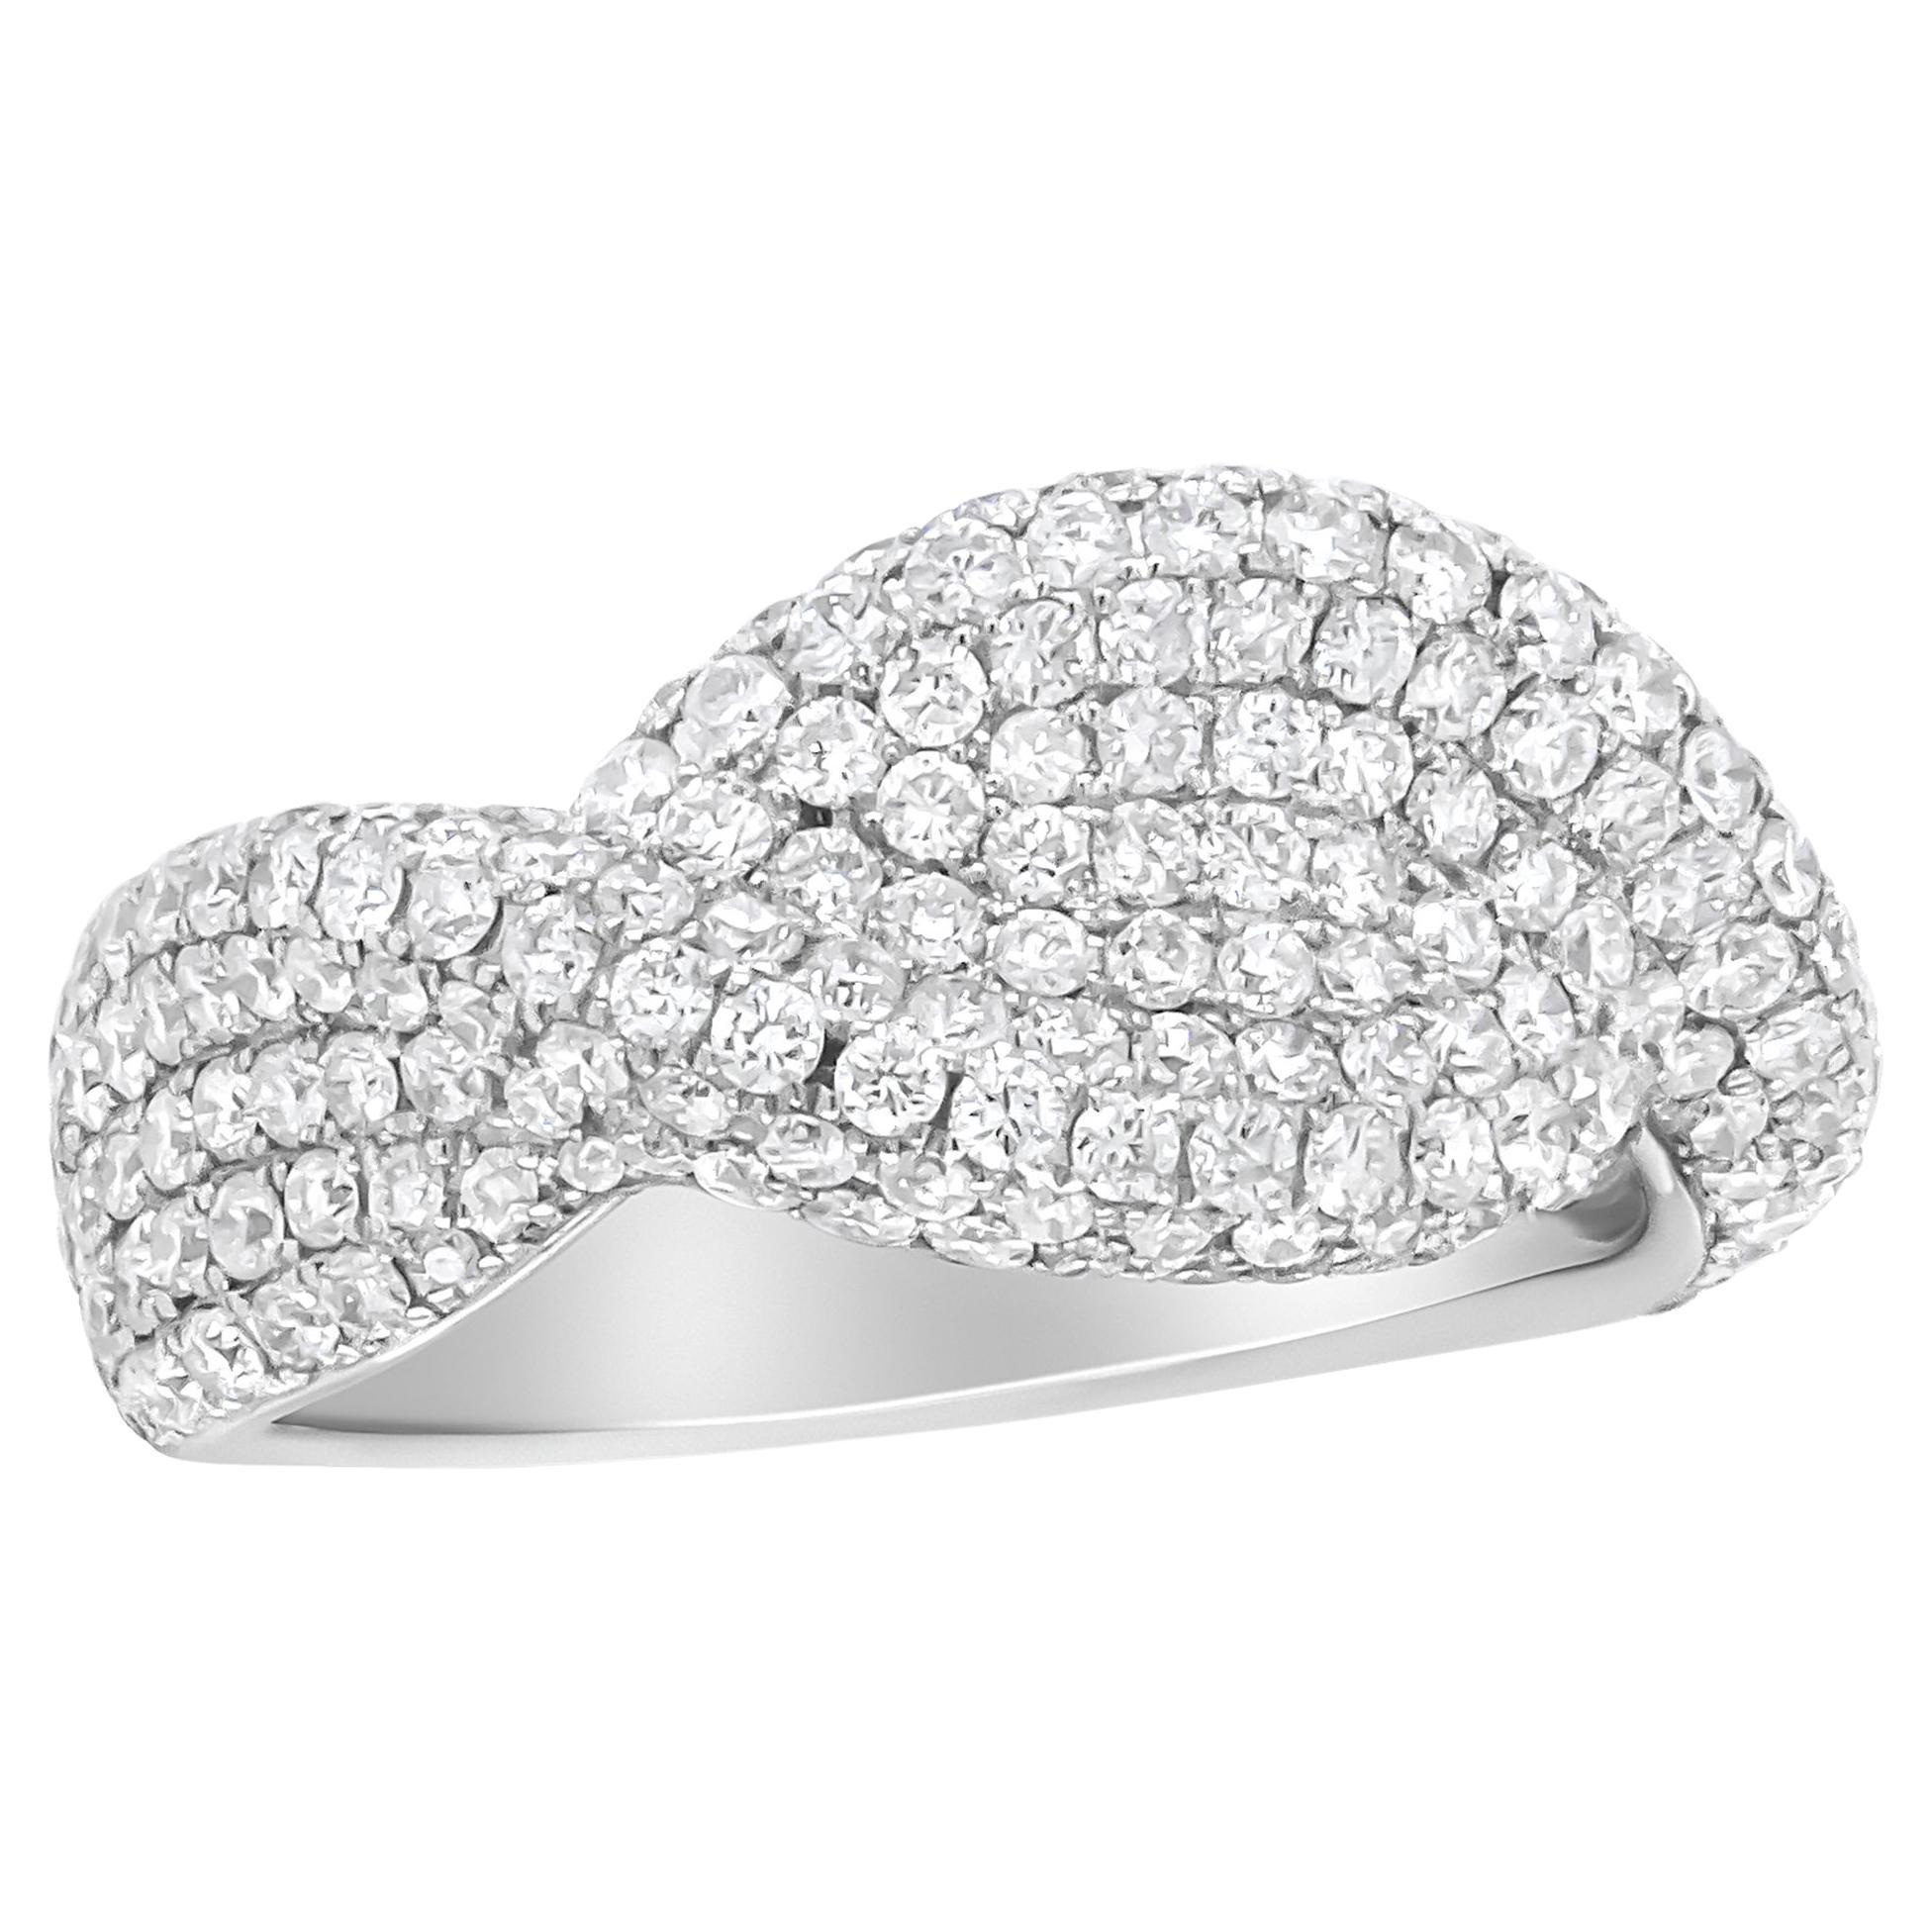 18K White Gold Cluster 2 1/4 Carat Diamond Fashion Ring